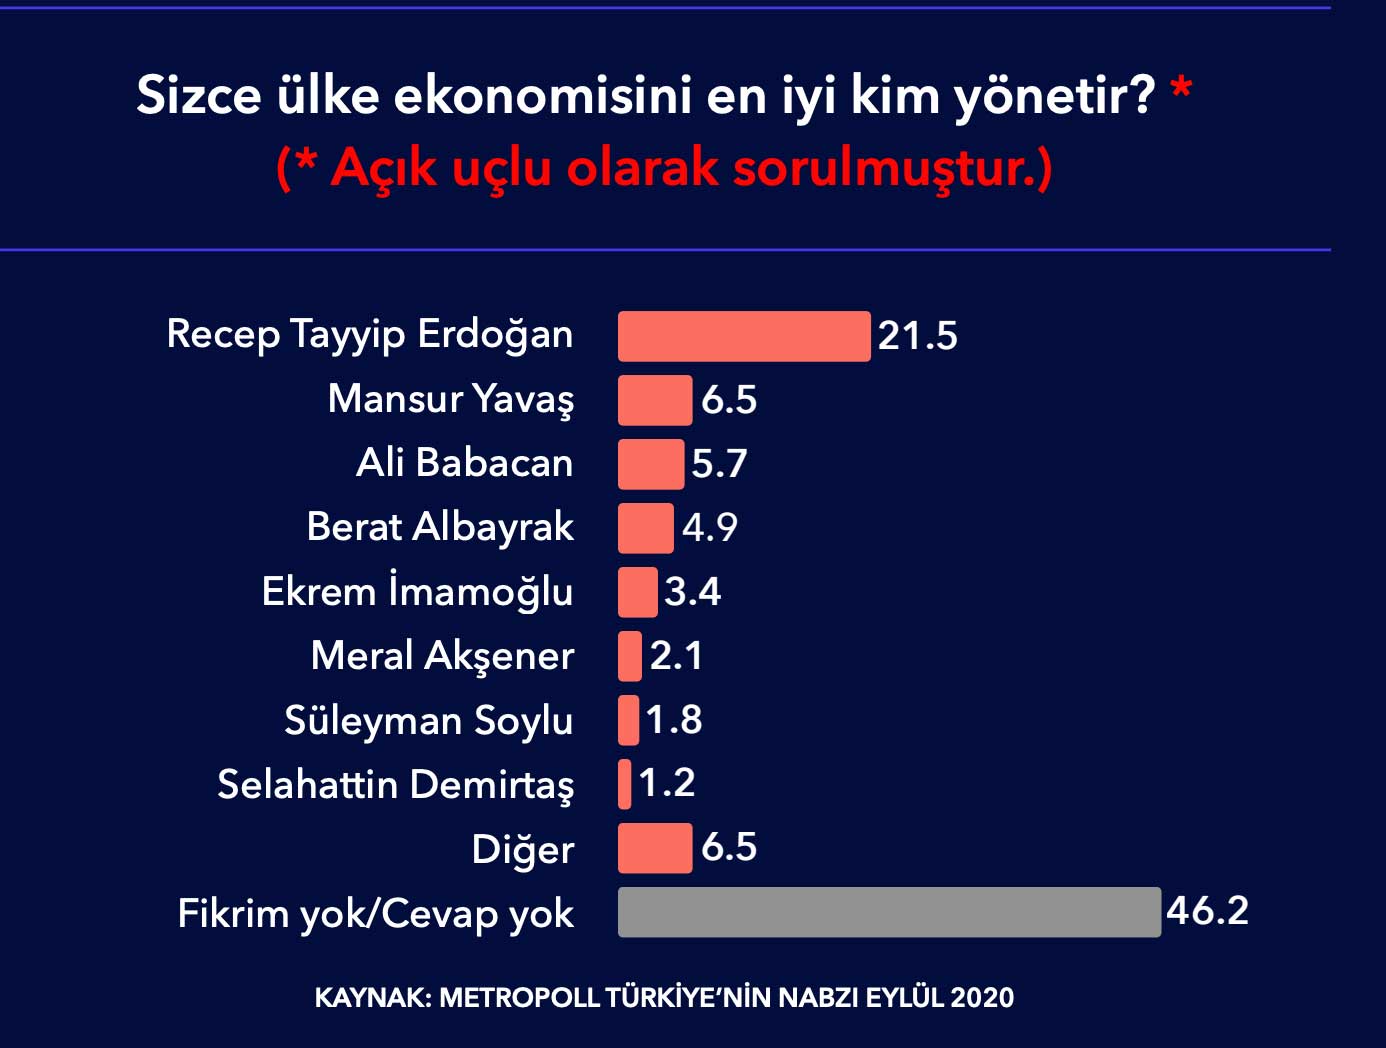 Anket: Halkın yalnızca yüzde 4,9'u ekonomiyi en iyi Berat Albayrak'ın yöneteceğini düşünüyor